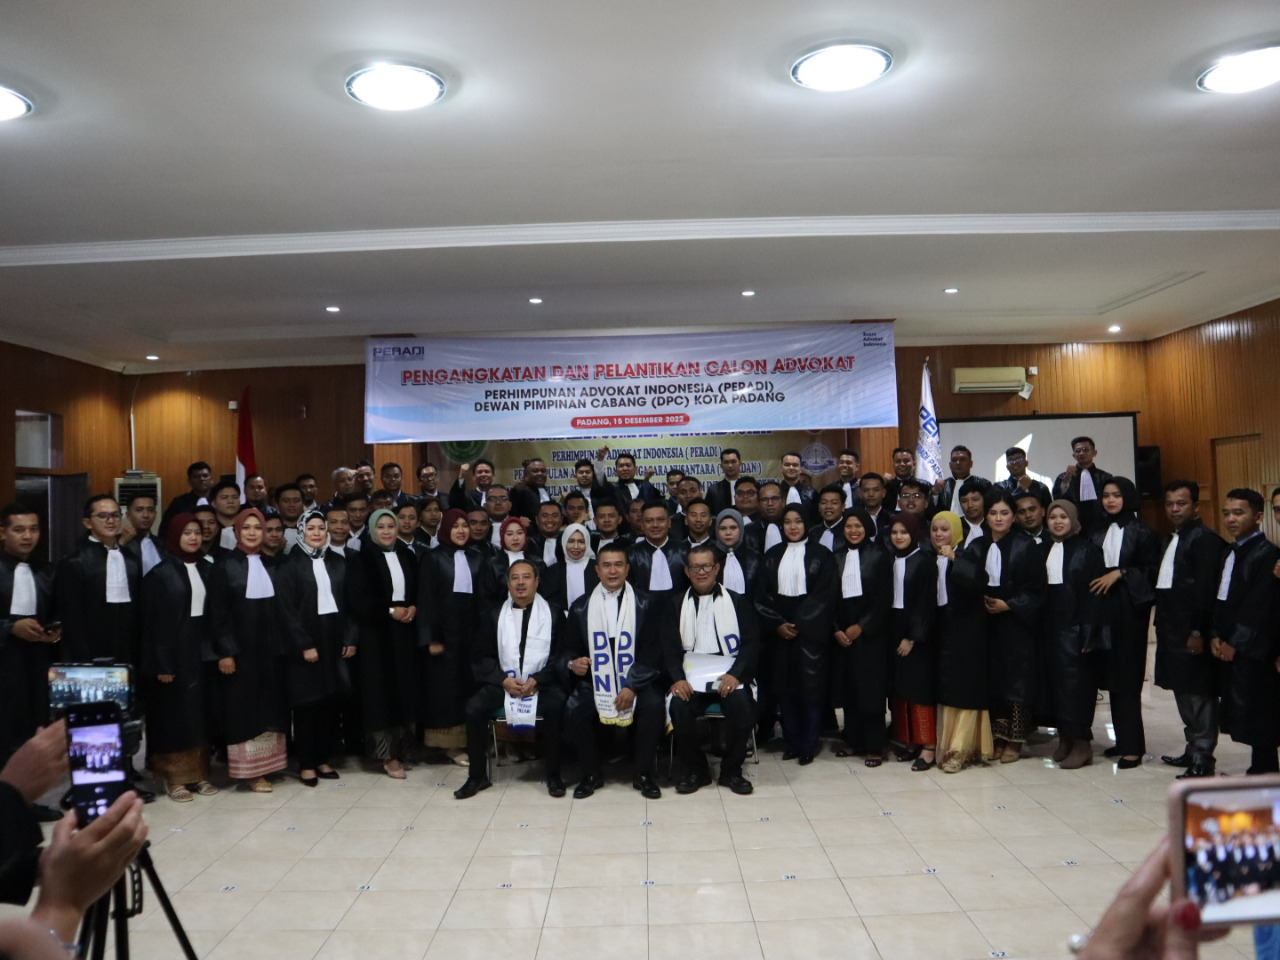 Pengangkatan dan Pelantikan Advokat DPC Padang di Pengadilan Tinggi Padang - 15 Desember 2022